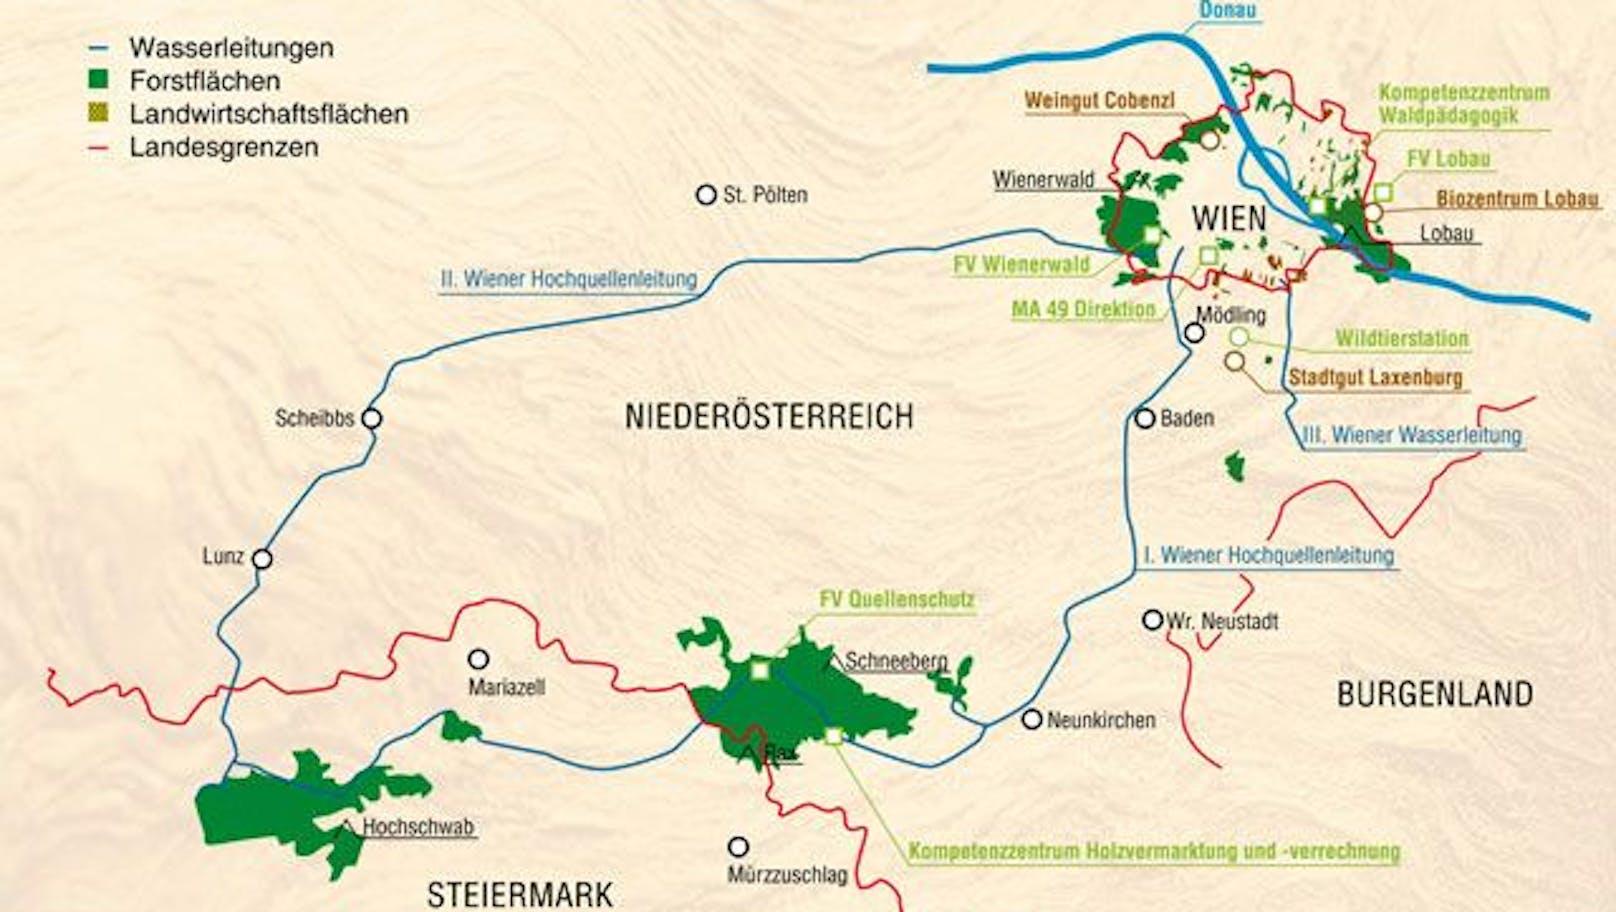 Übersichtskarte der Quellschutzwälder (grün) im Besitz der Stadt Wien in NÖ und der Steiermark